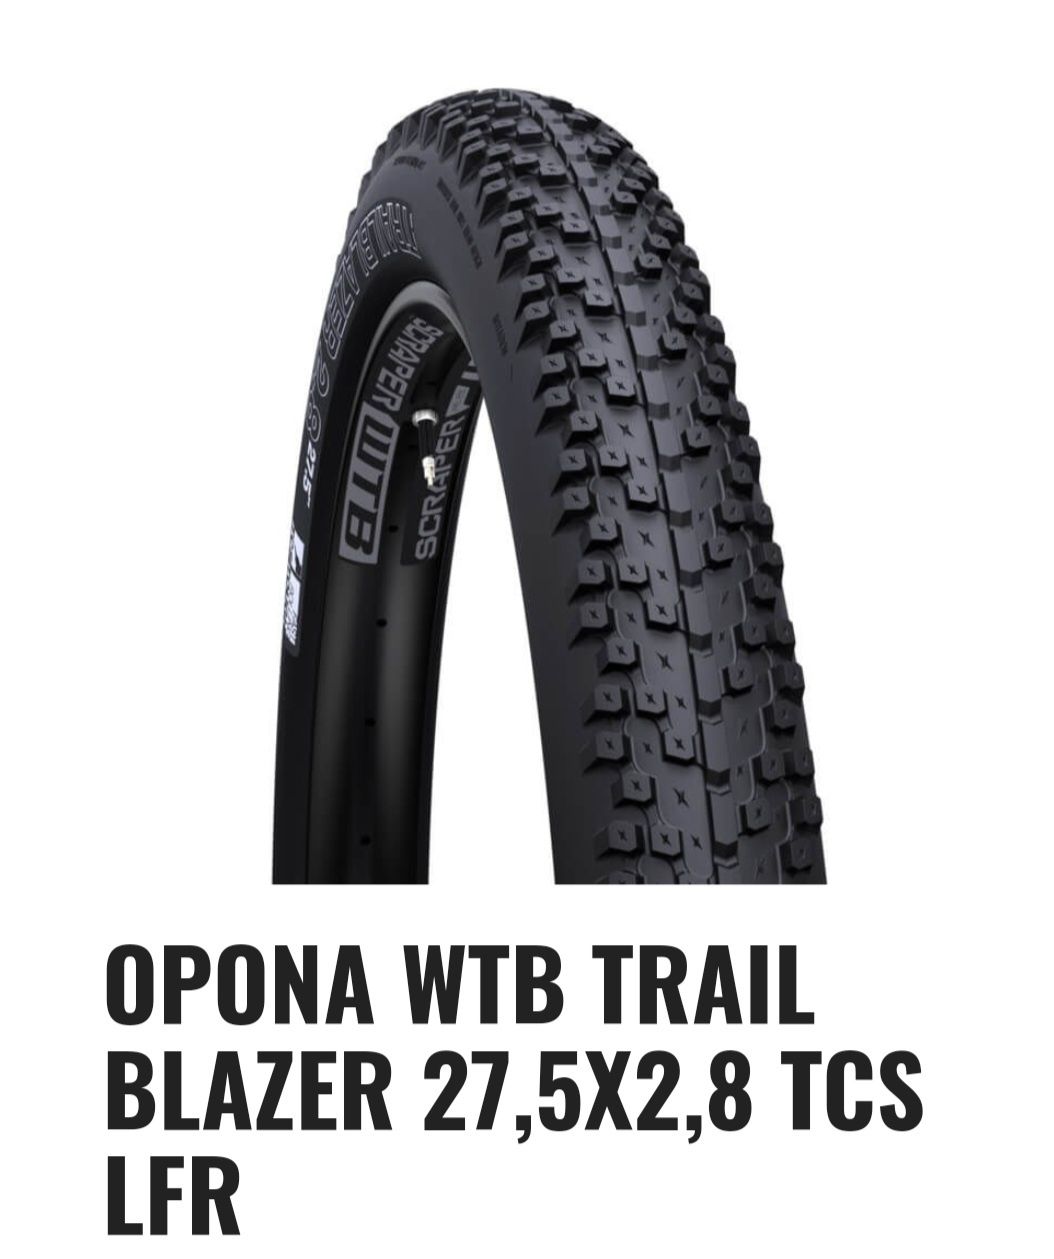 Opona WTB Trail blazer Light fast Opona zwijana 27.5x2.8